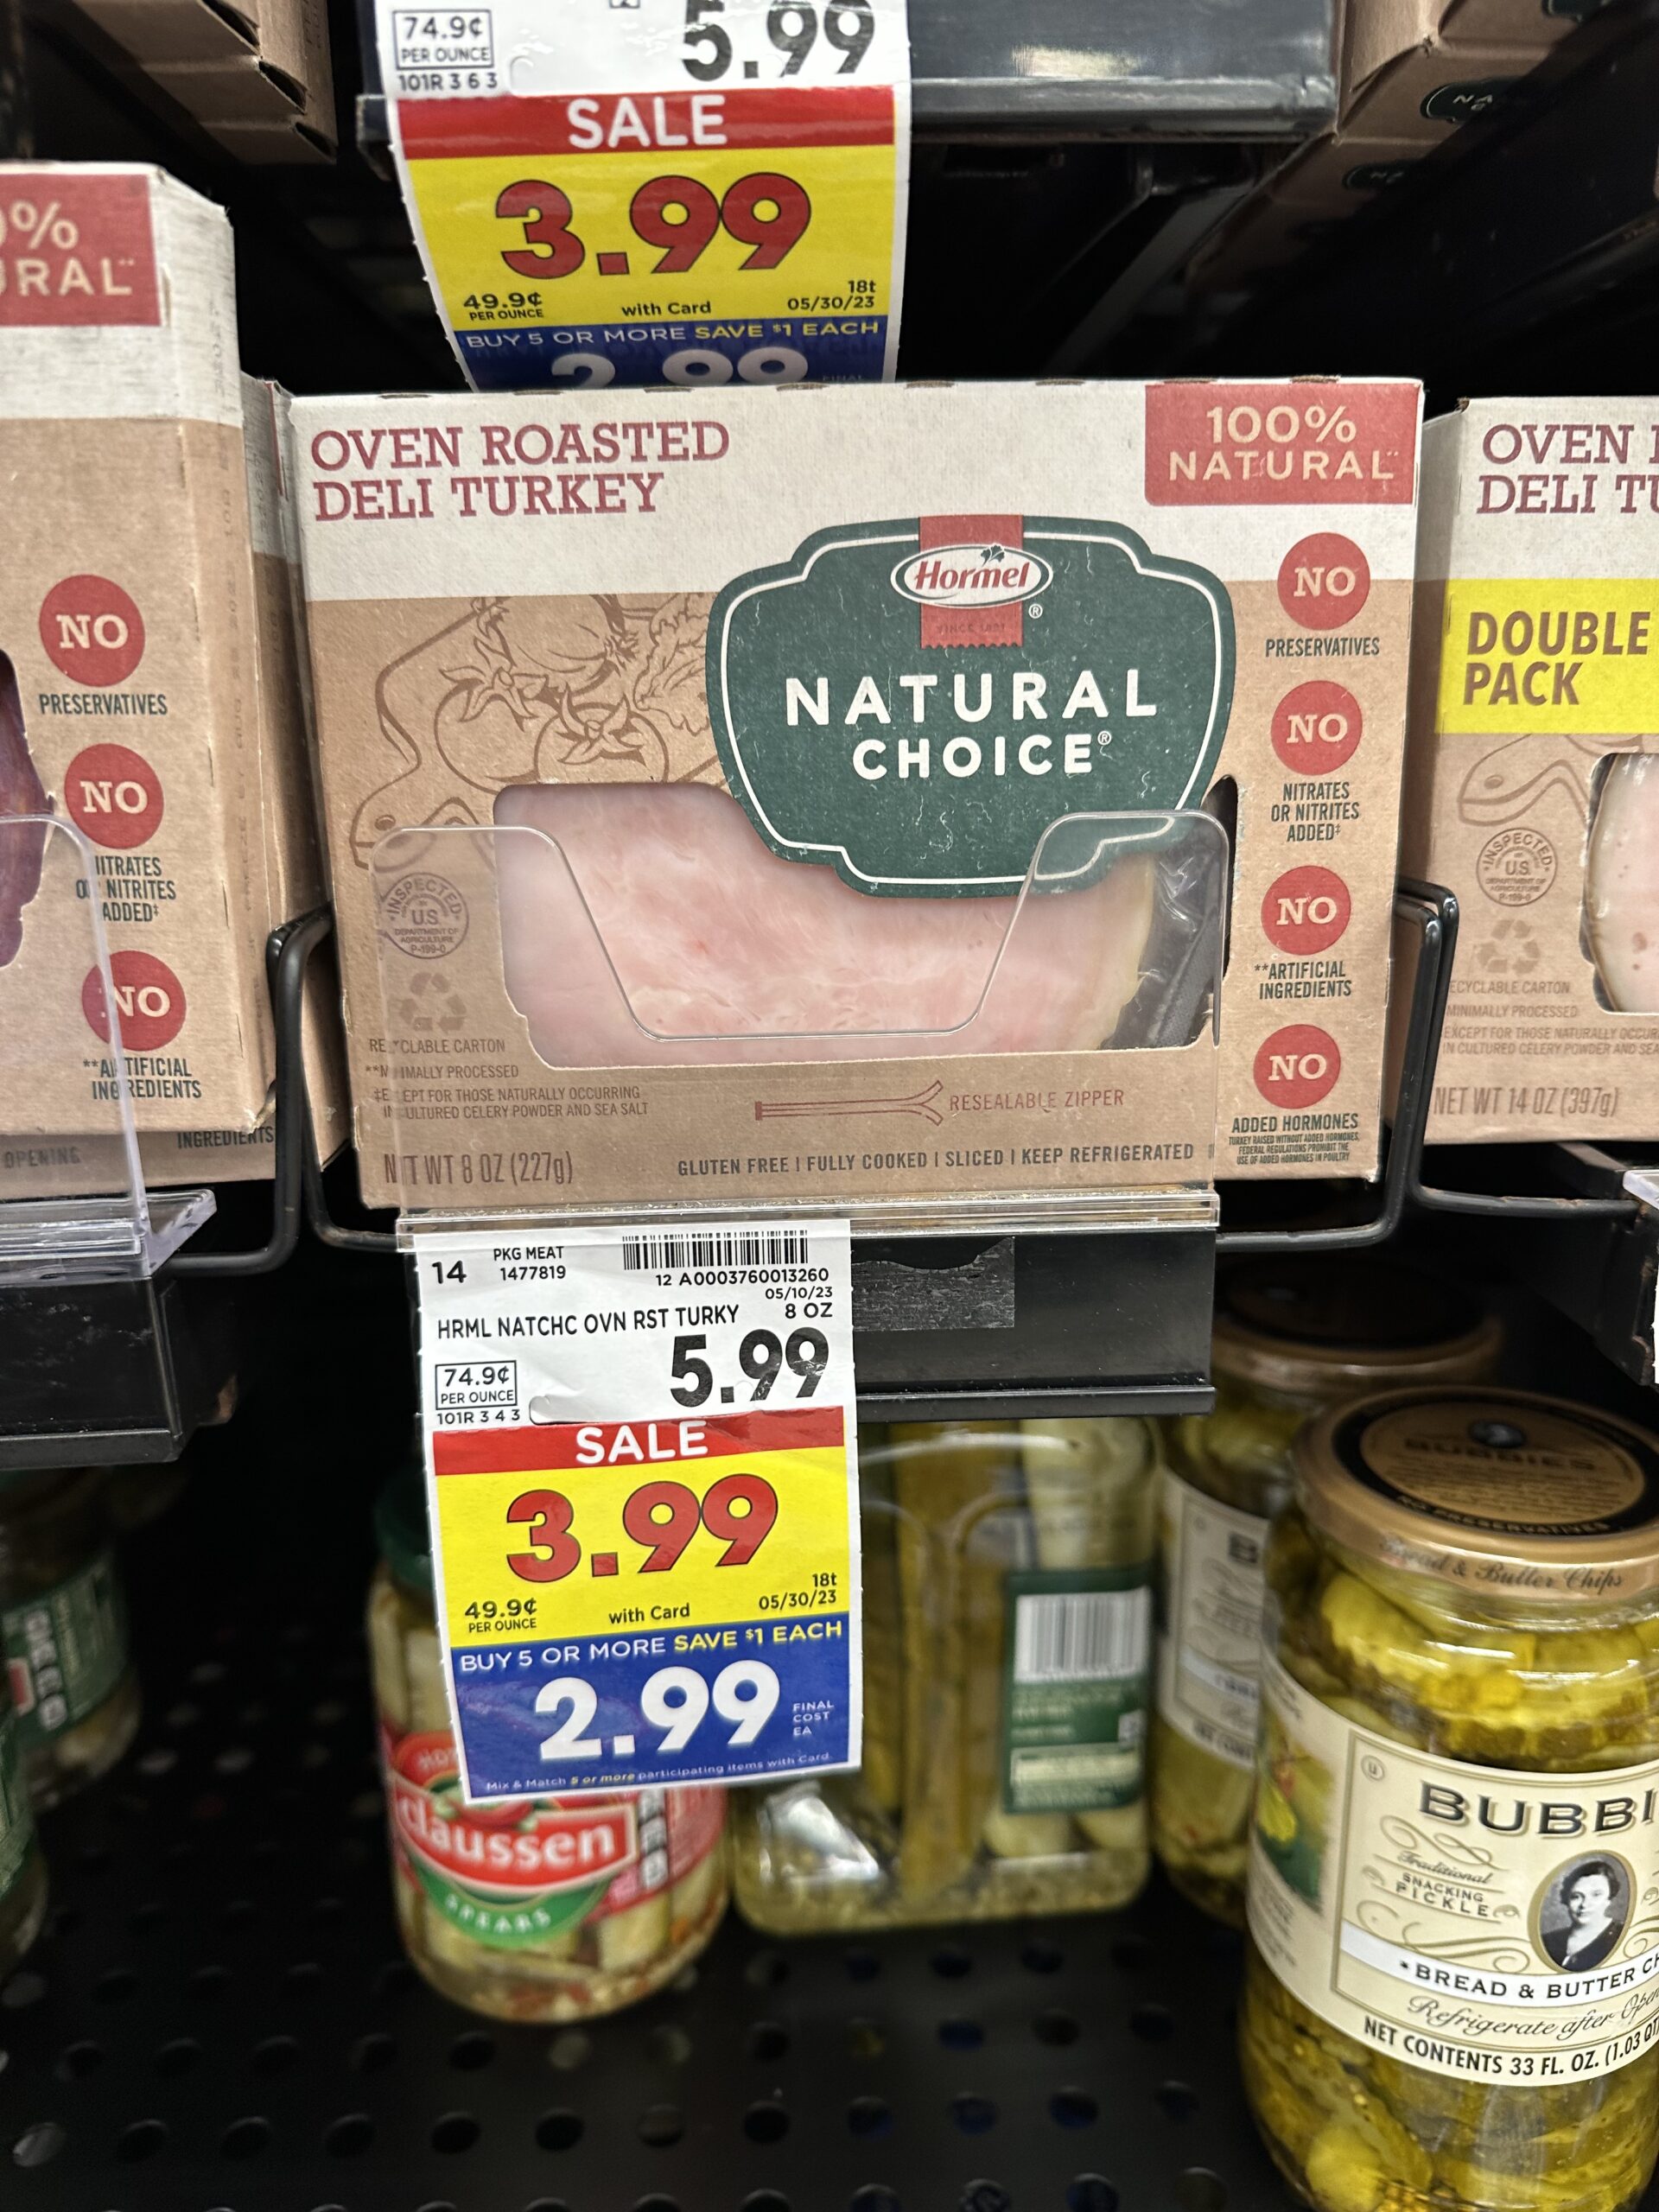 Hormel Natural Lunch Meat kroger shelf image 2